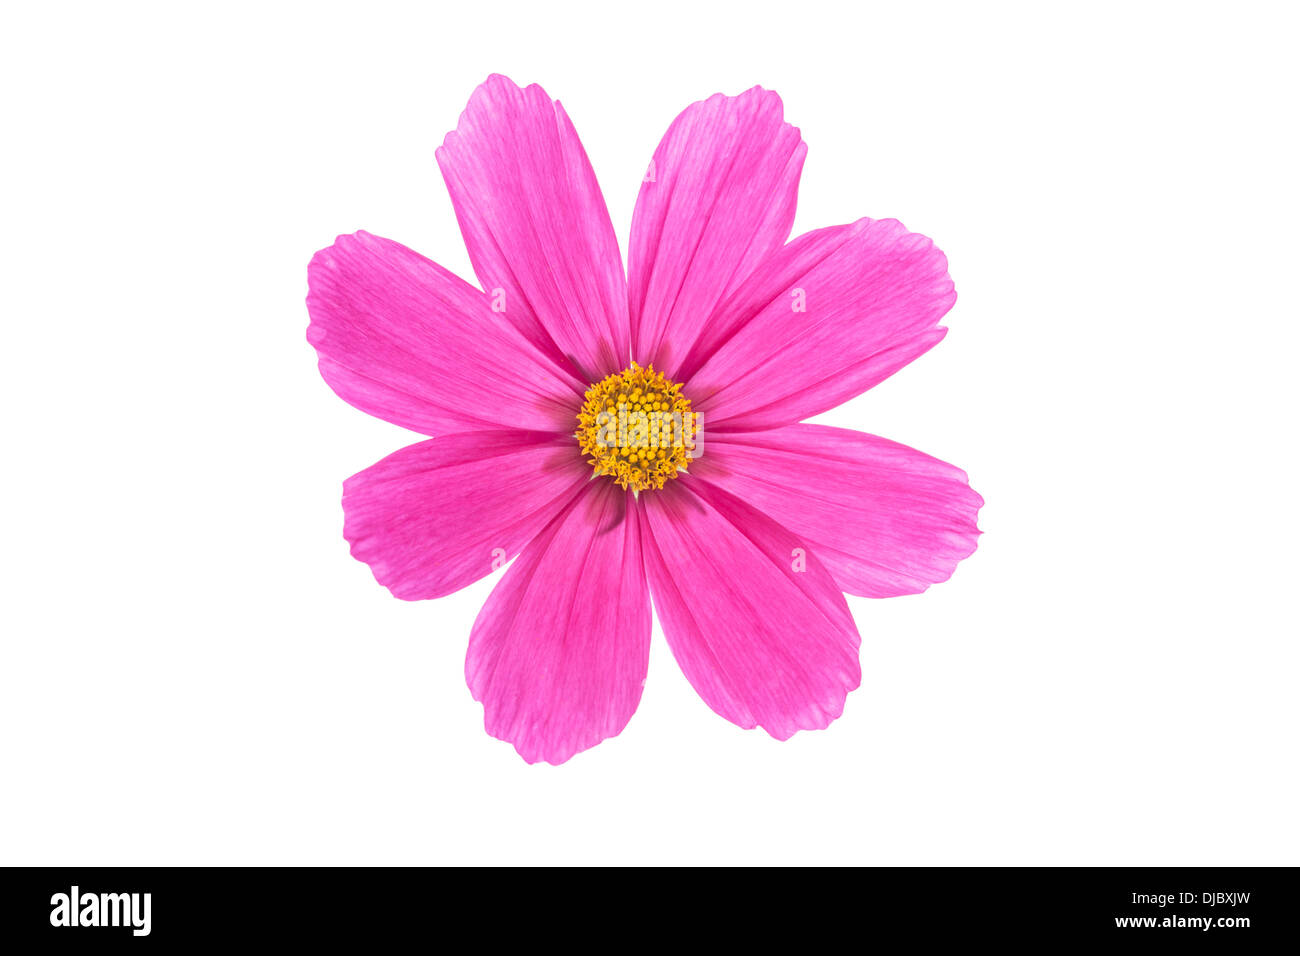 Cerise Pink Cosmo fiore isolato su sfondo bianco con profondità di campo e soft focus i petali del fiore Foto Stock